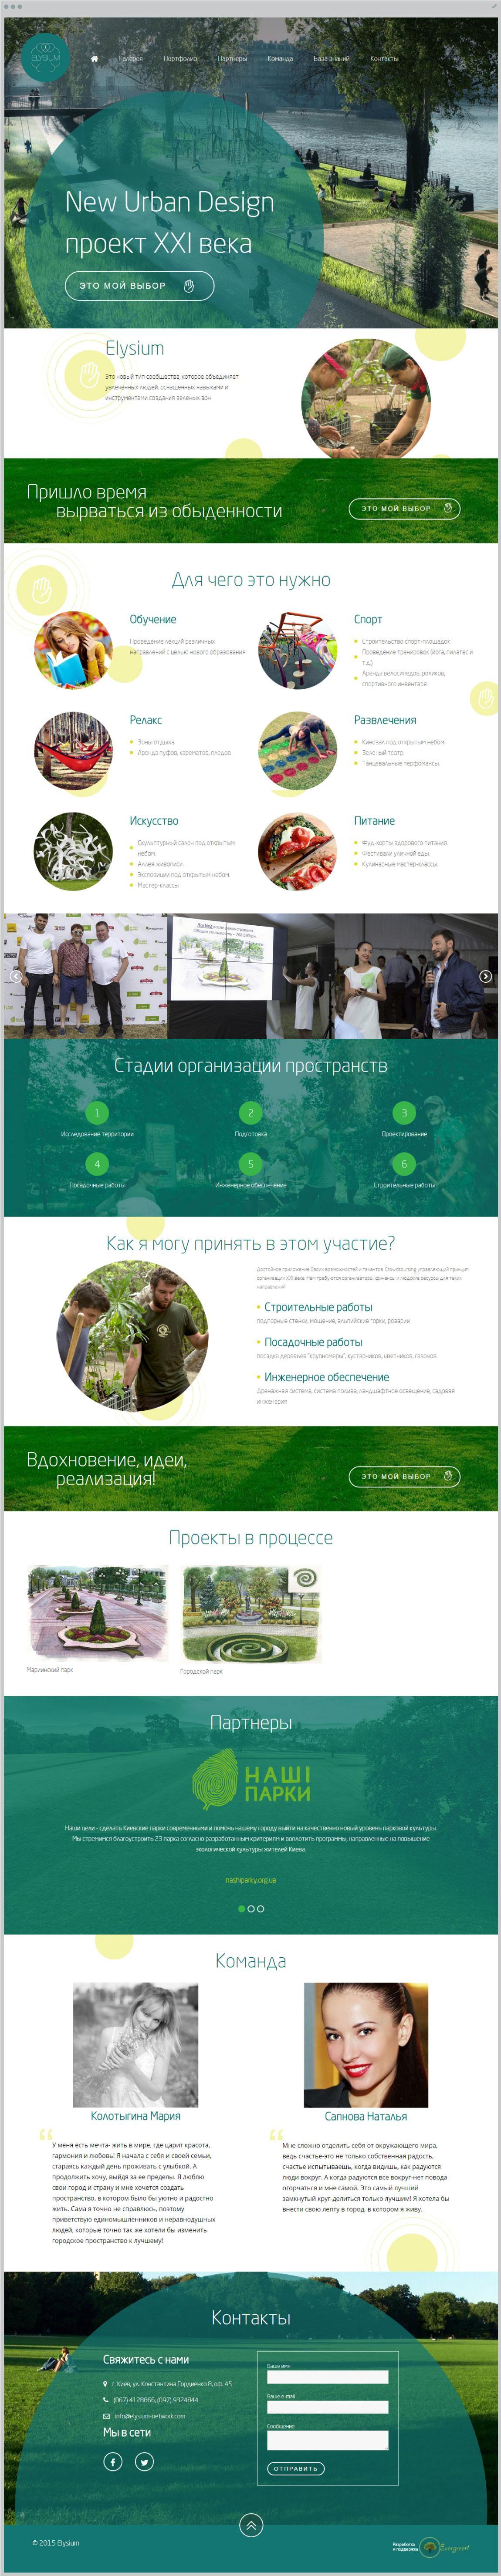 лендінг соціального проекту по створенню зелених зон | проекти Evergreen 7